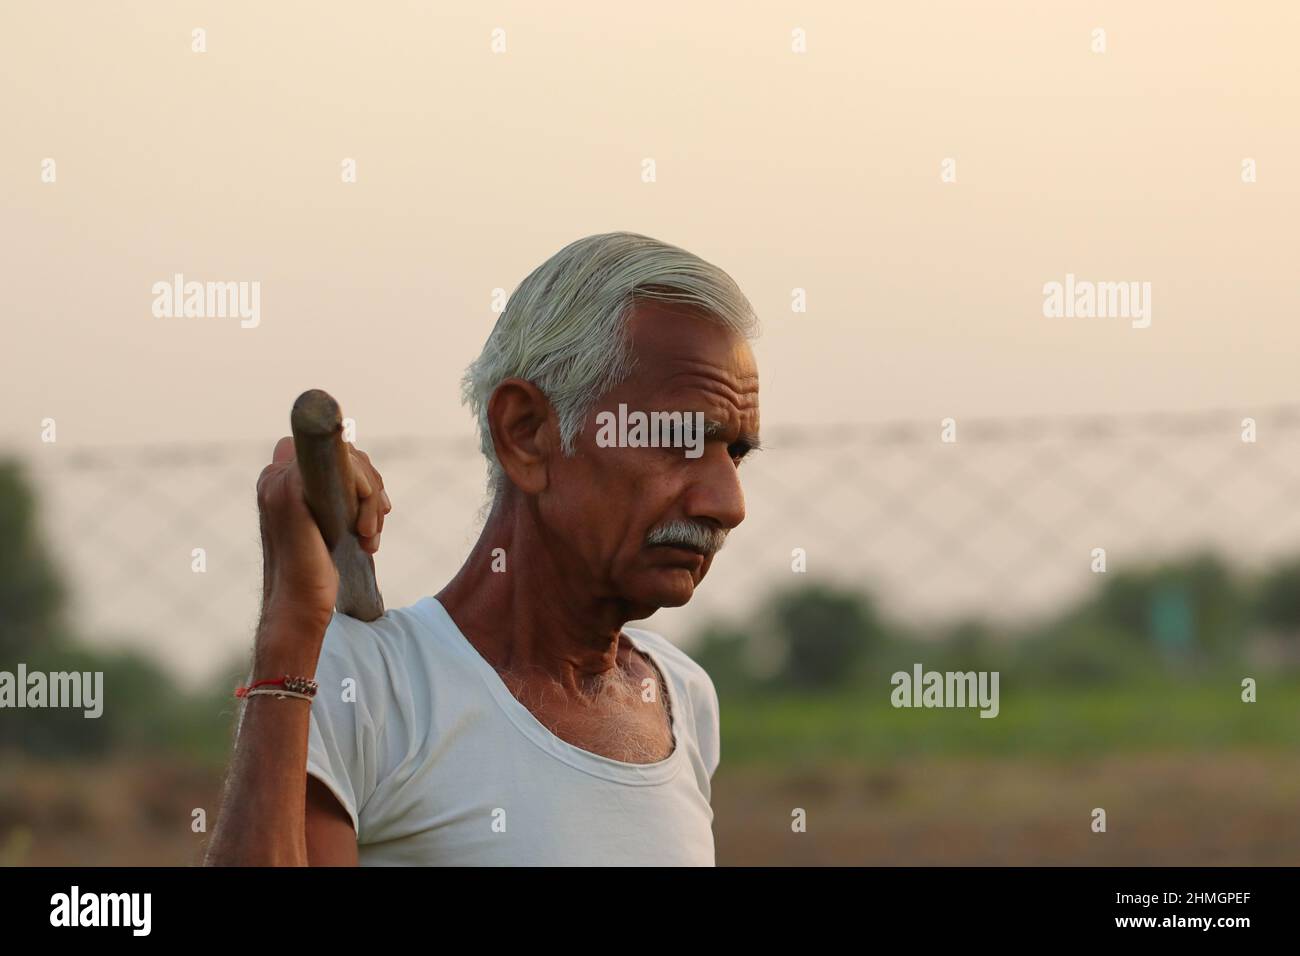 Nahaufnahme eines älteren indischen Bauern, der bei Sonnenuntergang mit einer Schaufel auf der Schulter und einer weißen Weste auf dem Feld steht Stockfoto